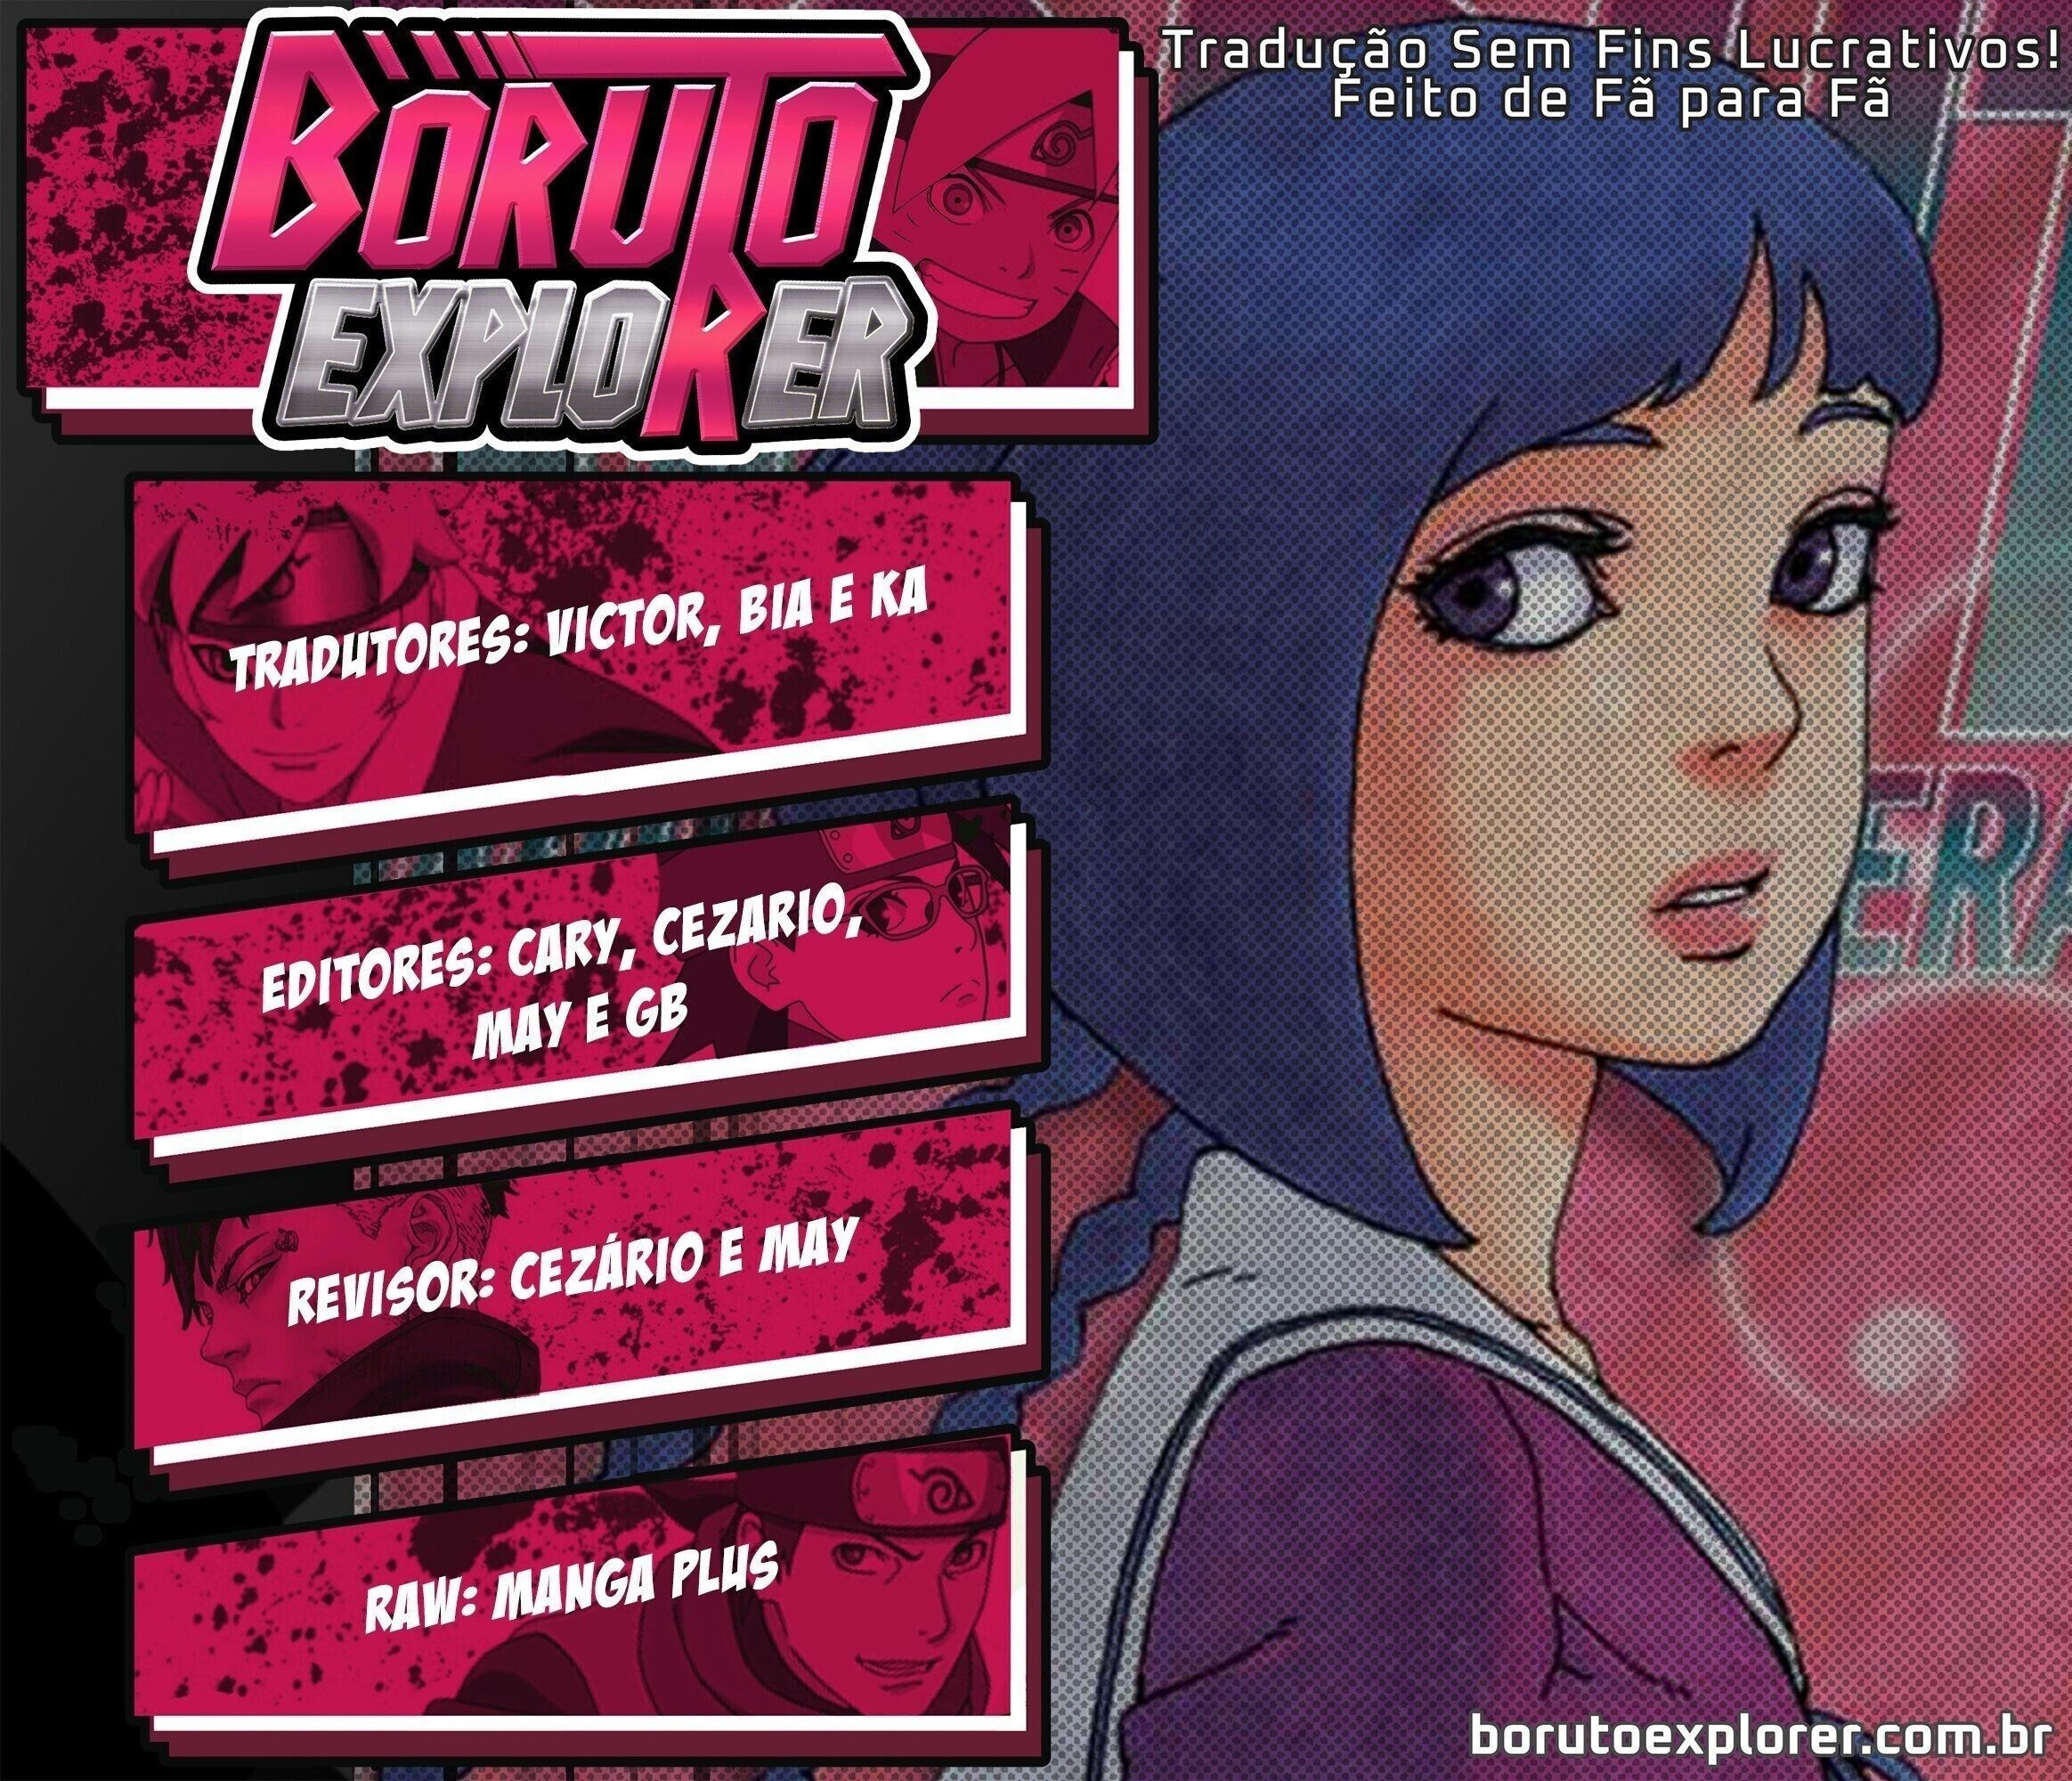 Boruto Explorer - BORUTO: NARUTO NEXT GENERATIONS 